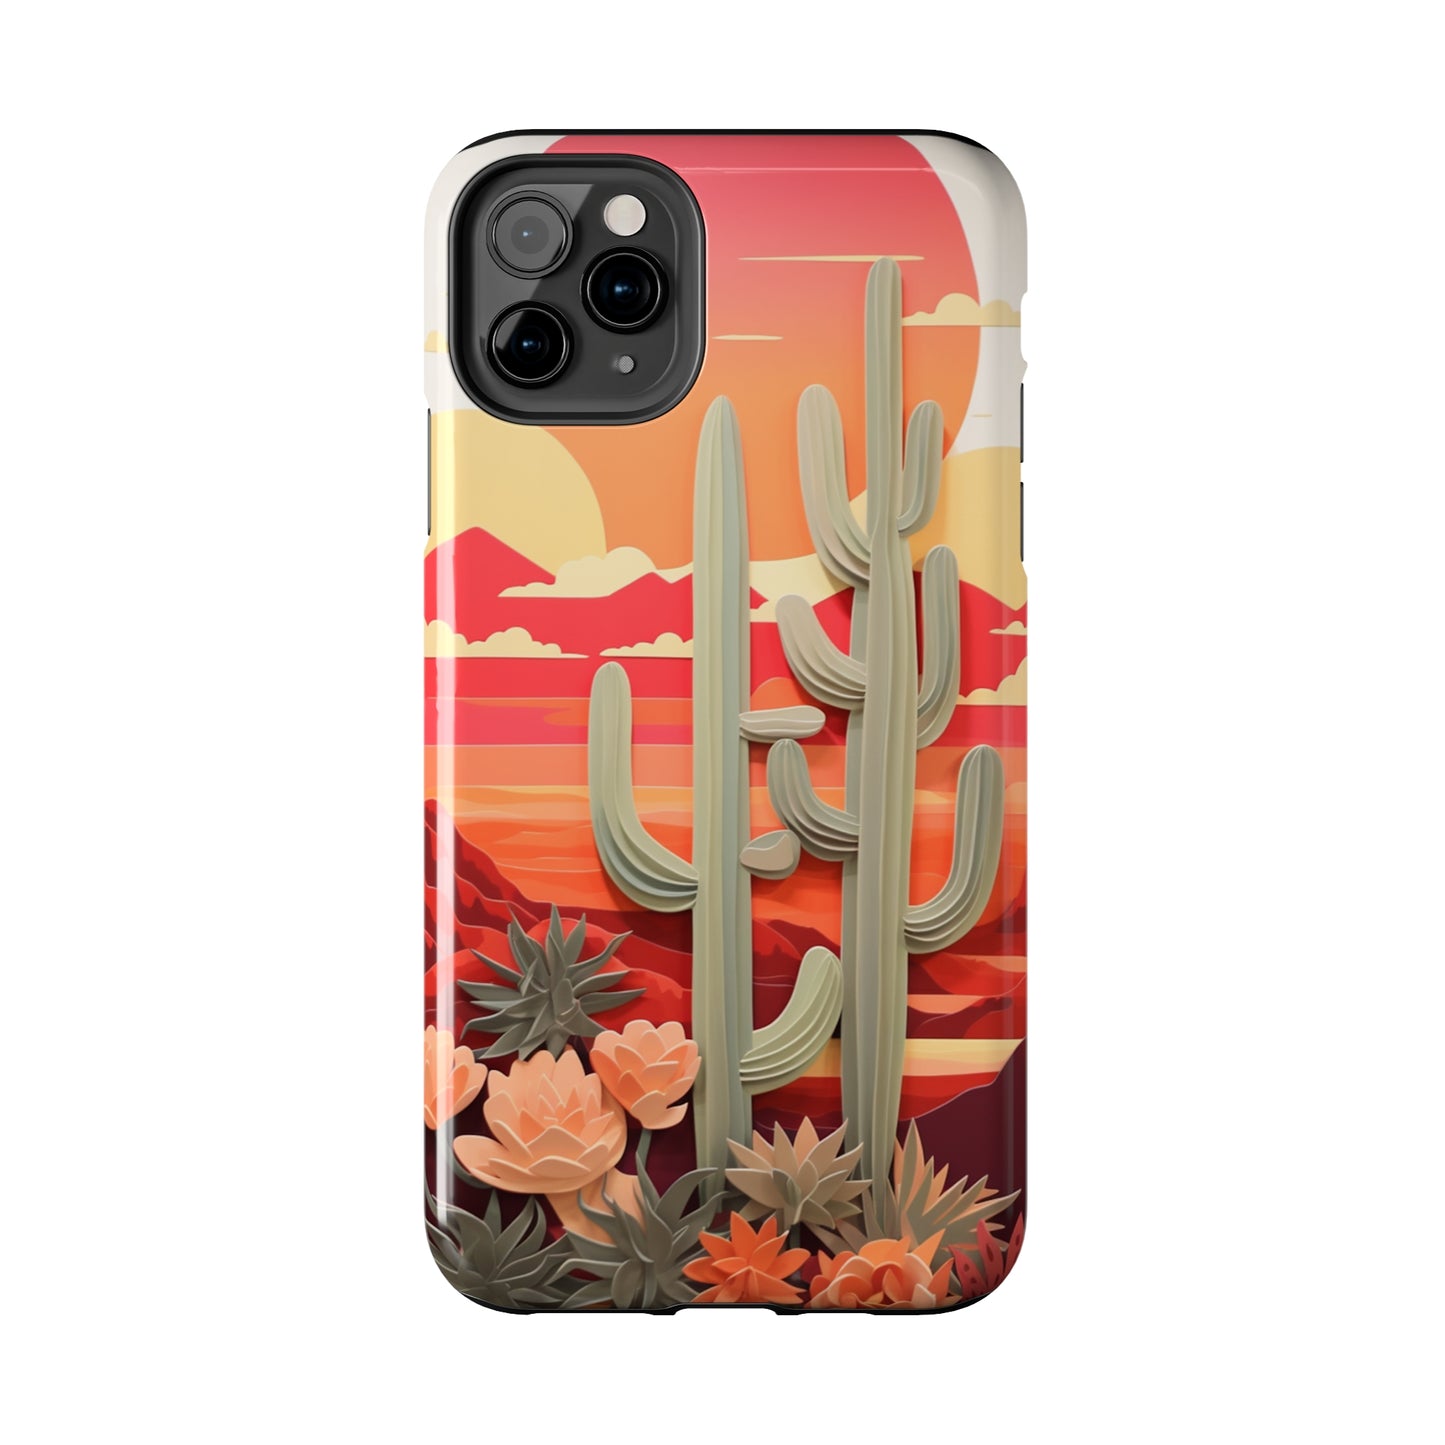 Cactus Desert Sunset iPhone Case